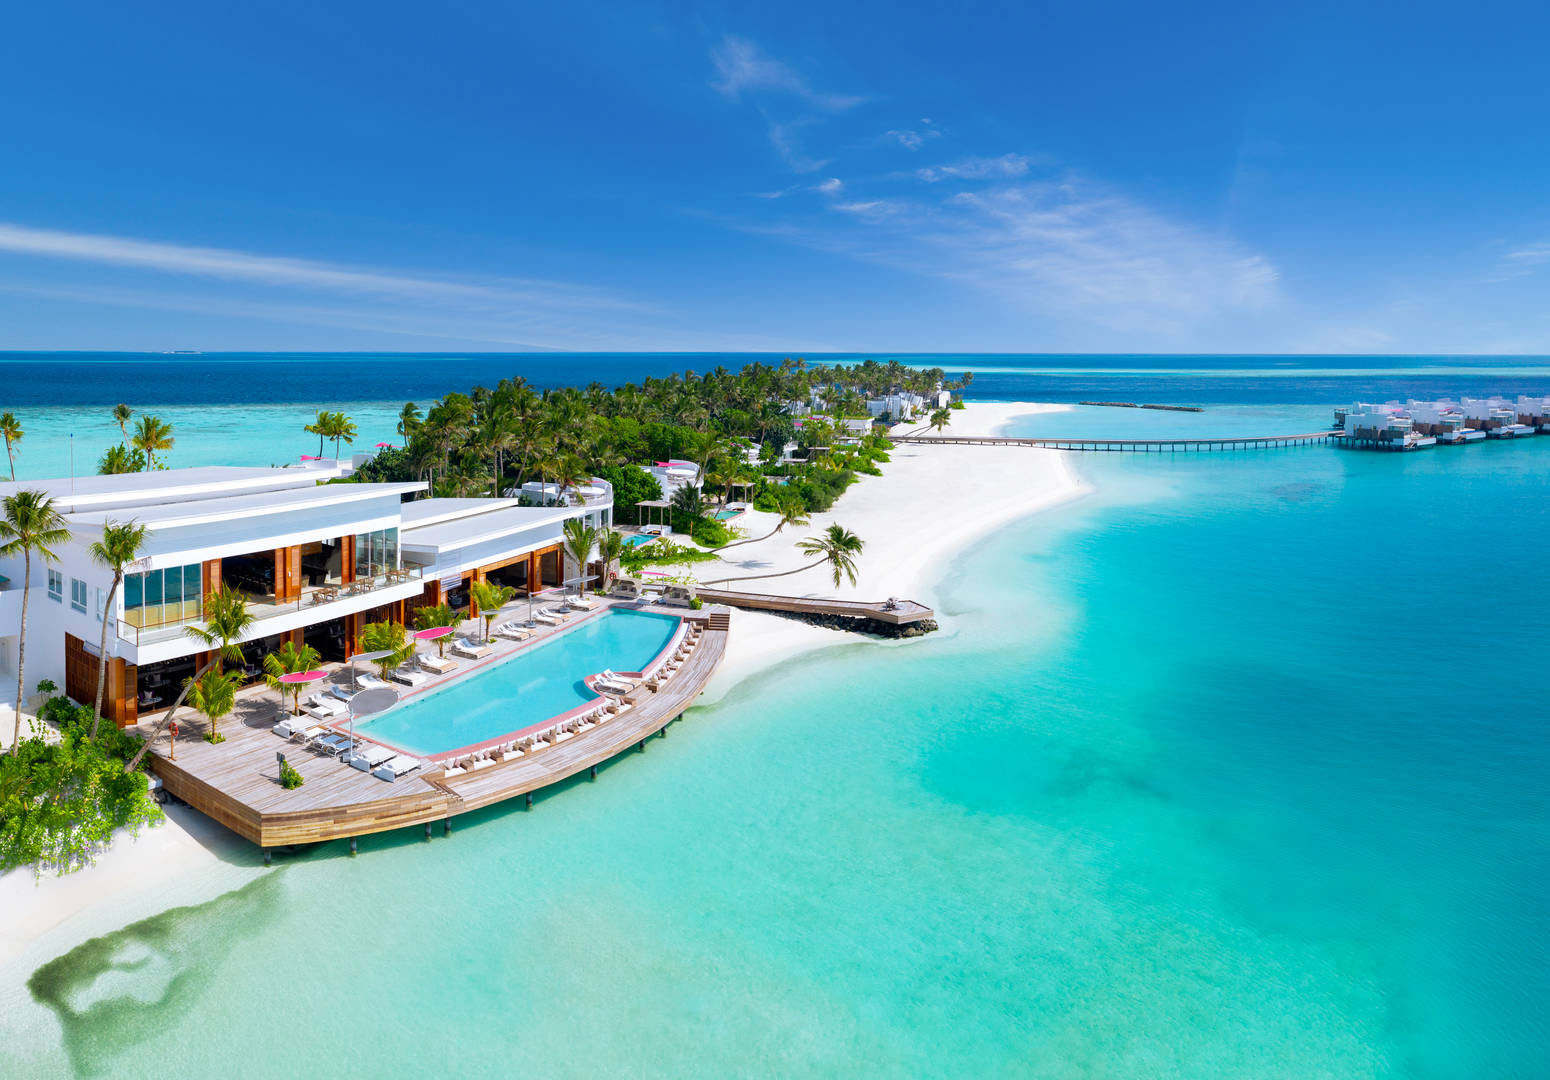 Jumeirah Maldives Olhahali Island 
nominé pour le TOP 10 des Meilleurs Hôtels des Maldives 2023